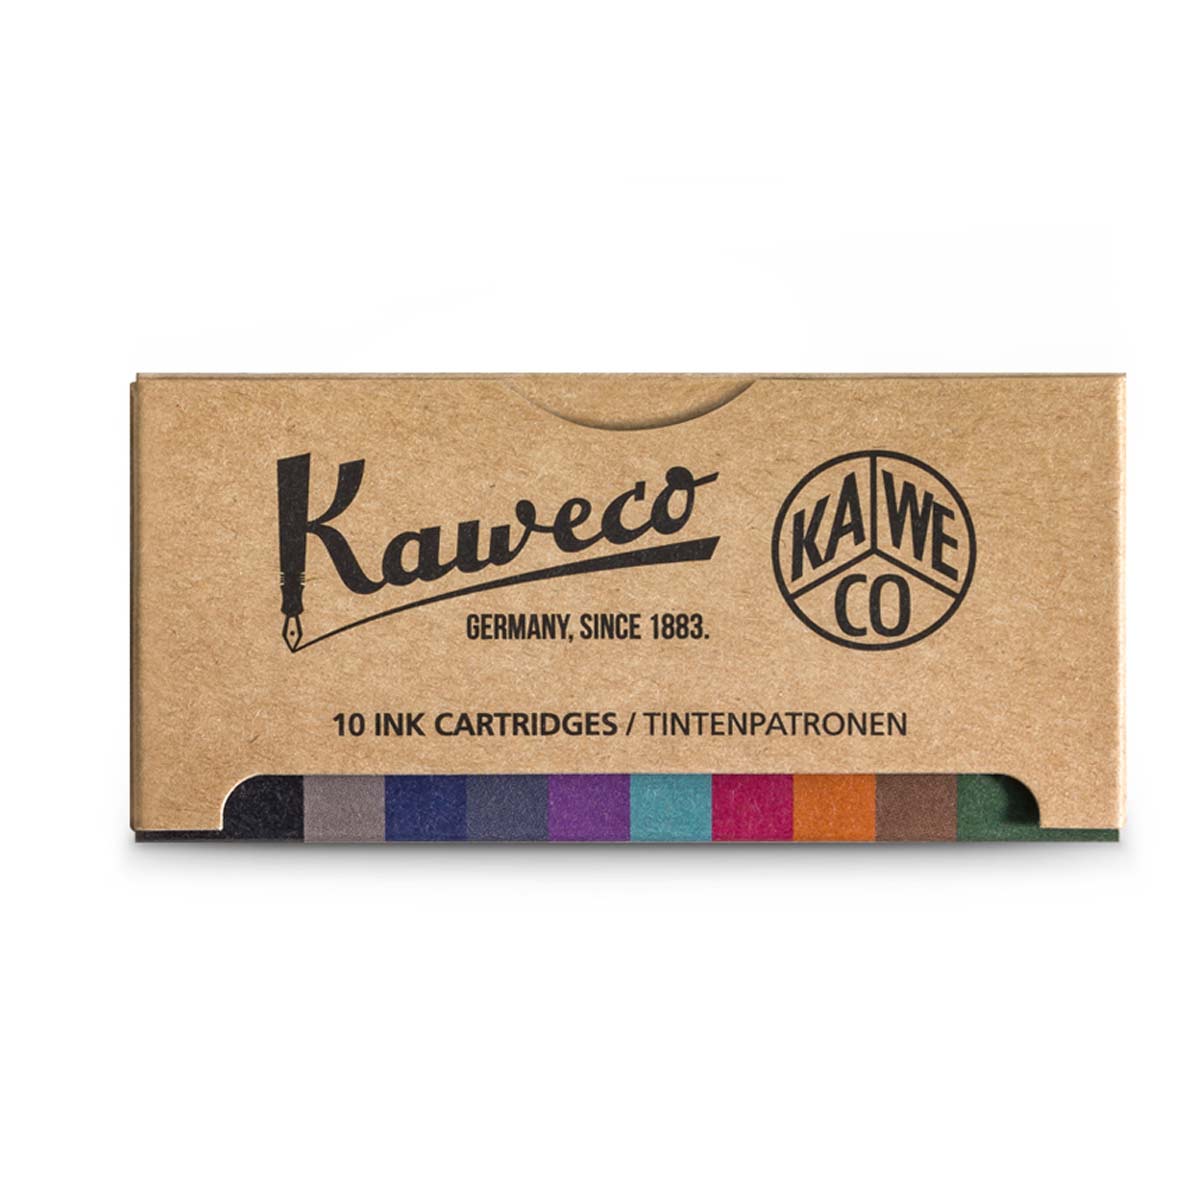 Kaweco ink cartridge pack